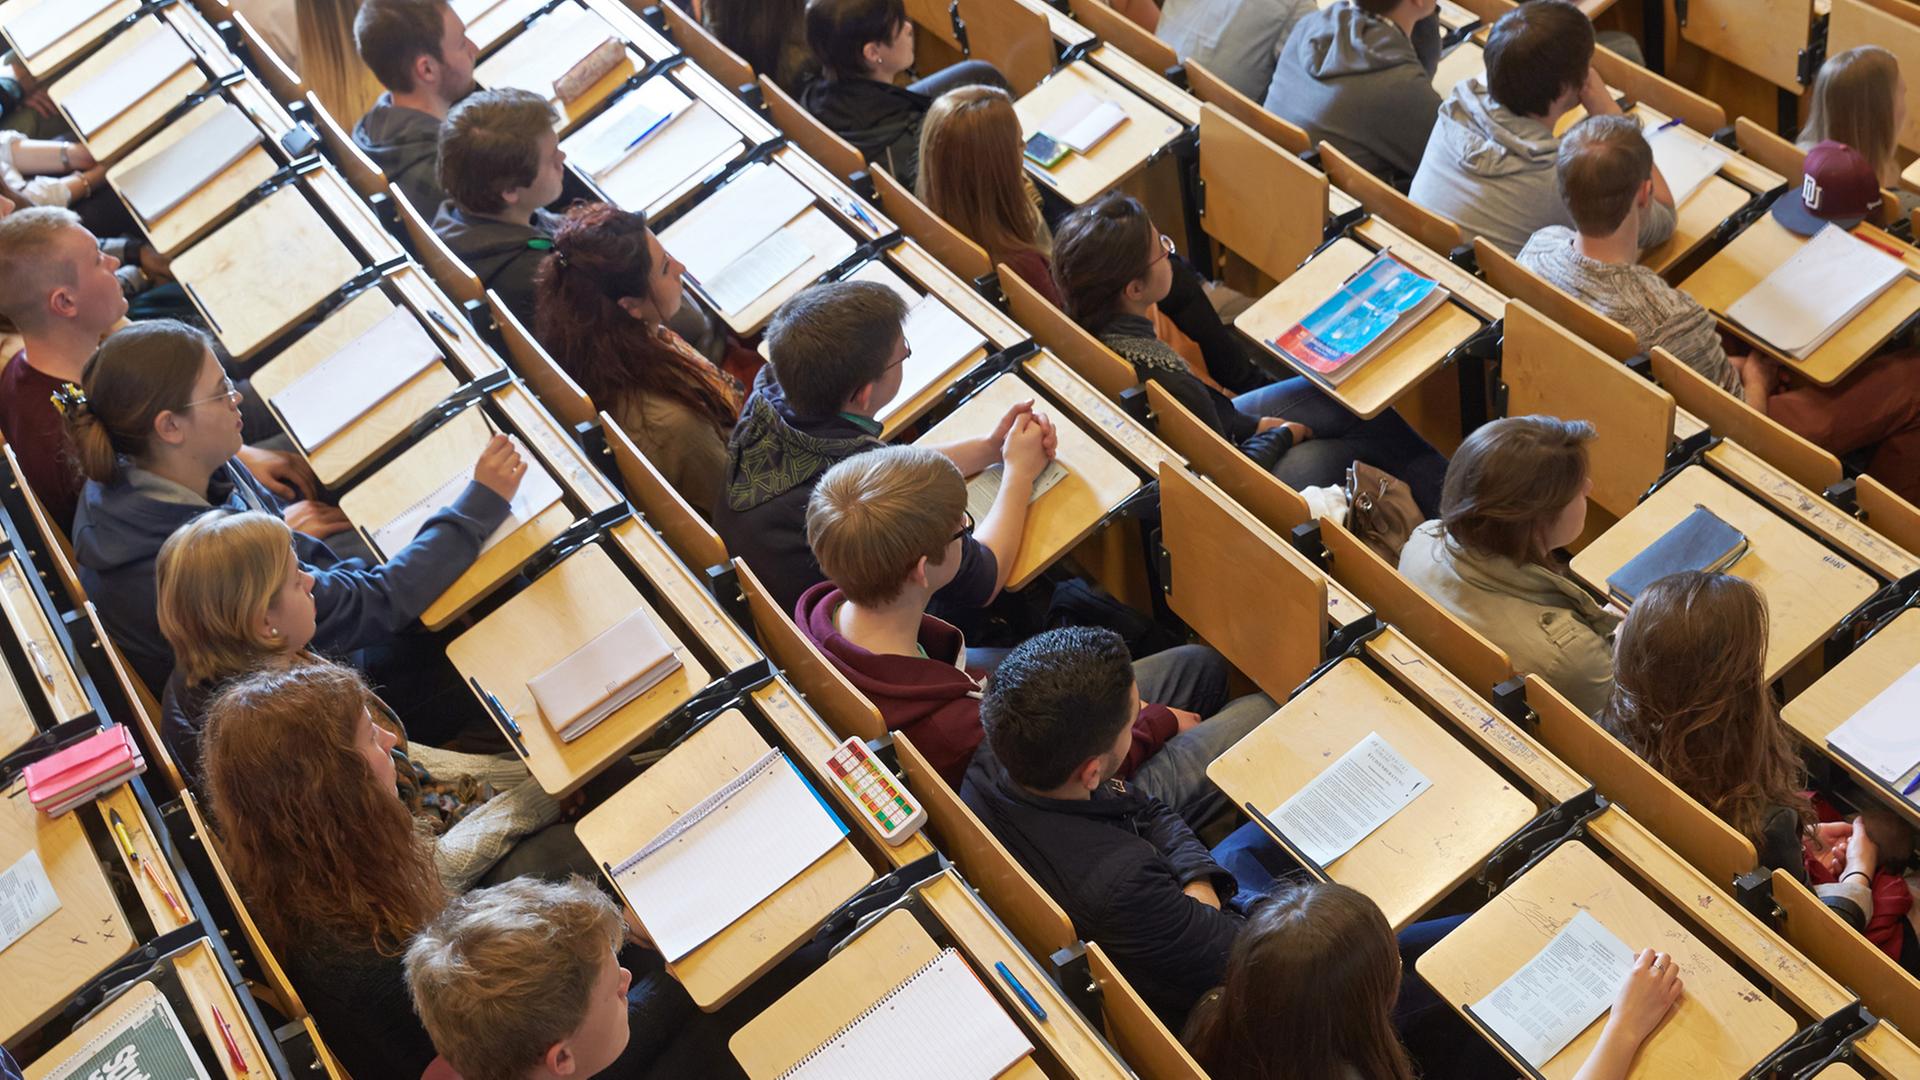 Studenten in einem Hörsaal - fotografiert aus der Vogelperspektive 